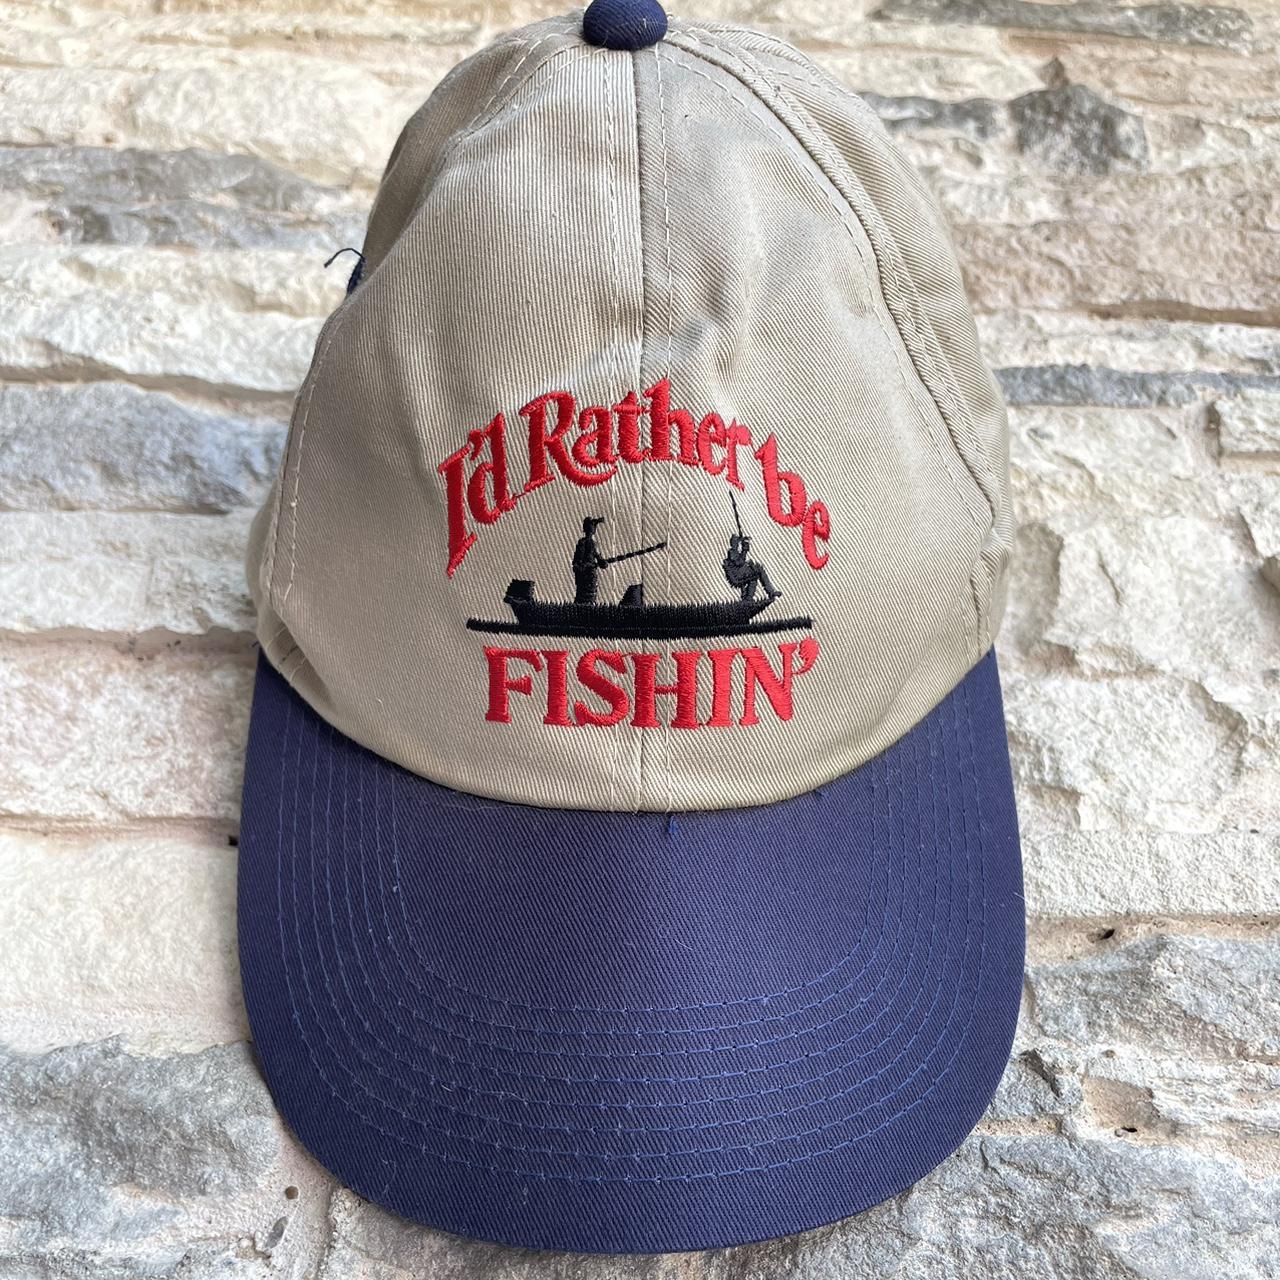 Vintage Hat I'D RATHER BE FISHIN' FISHING SNAPBACK - Depop